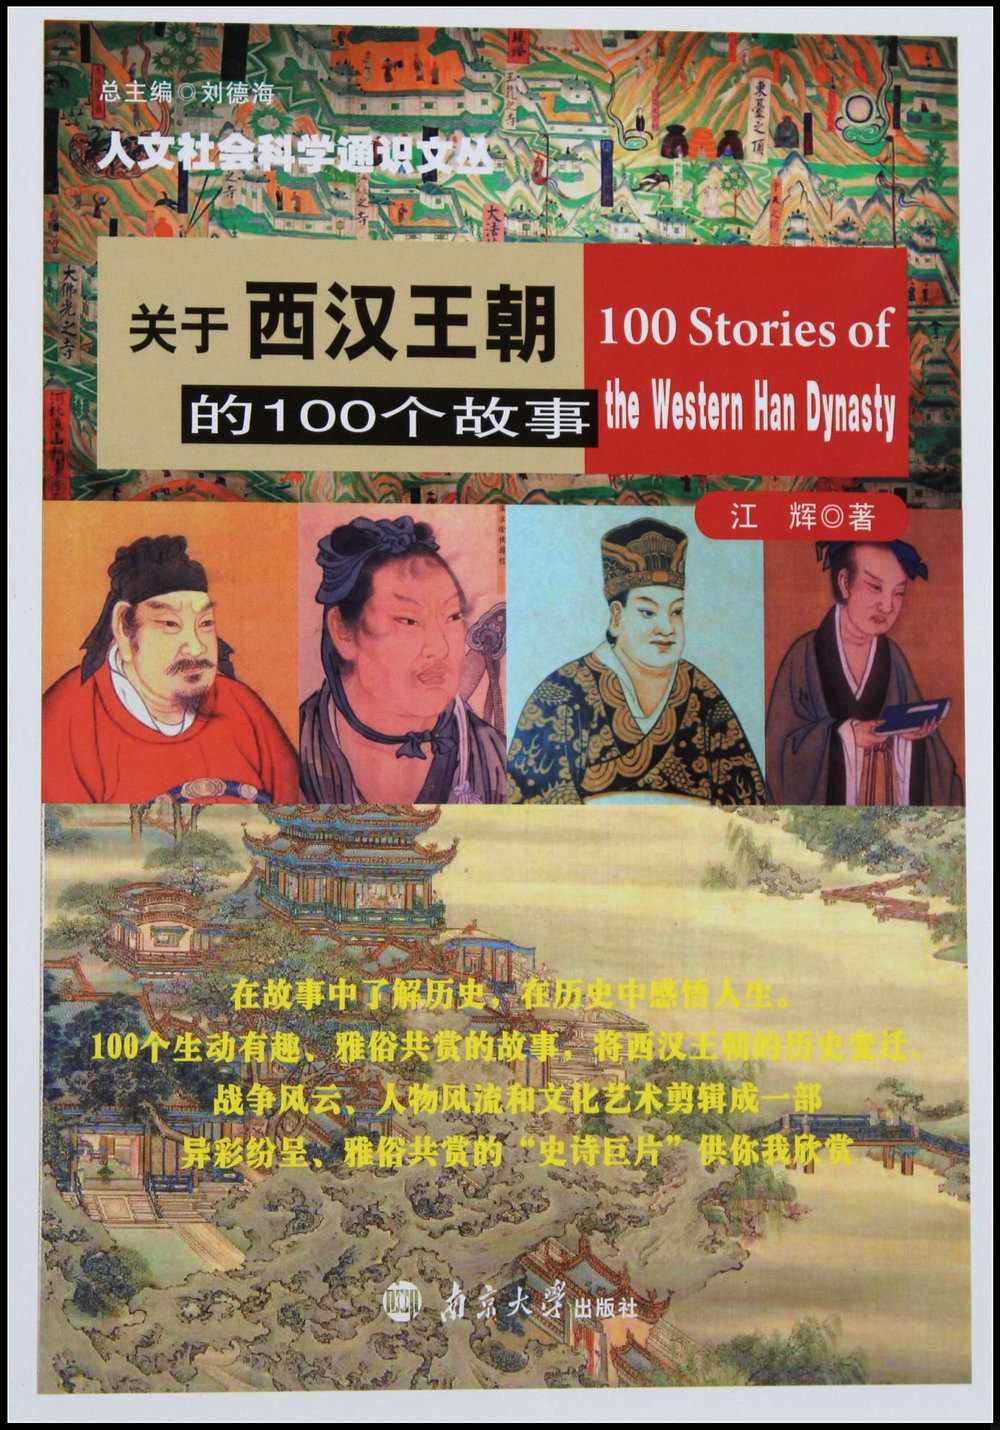 關於西漢王朝的100個故事